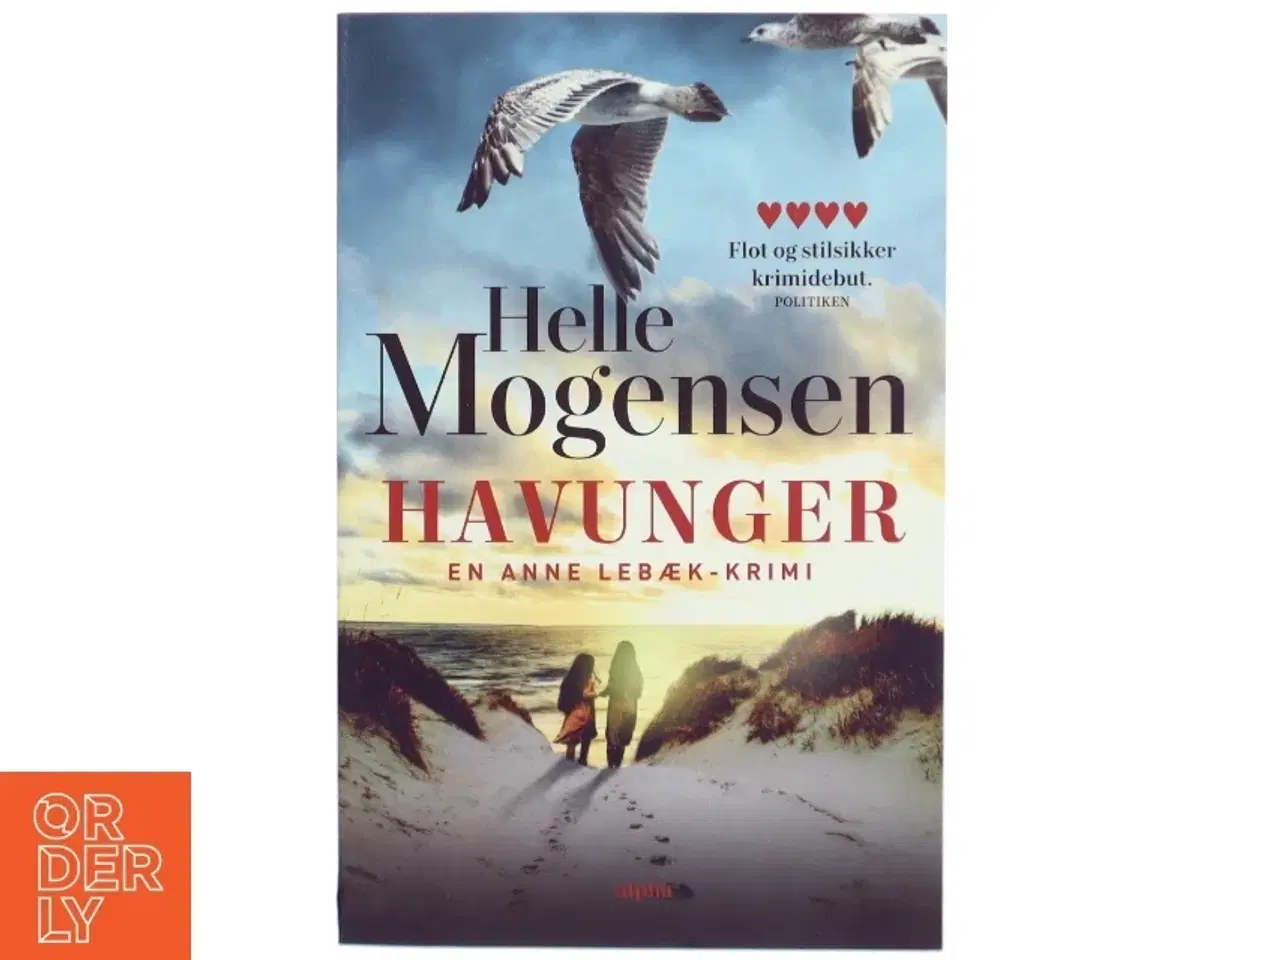 Billede 1 - 'Havunger: kriminalroman' af Helle Mogensen (f. 1969) (bog)